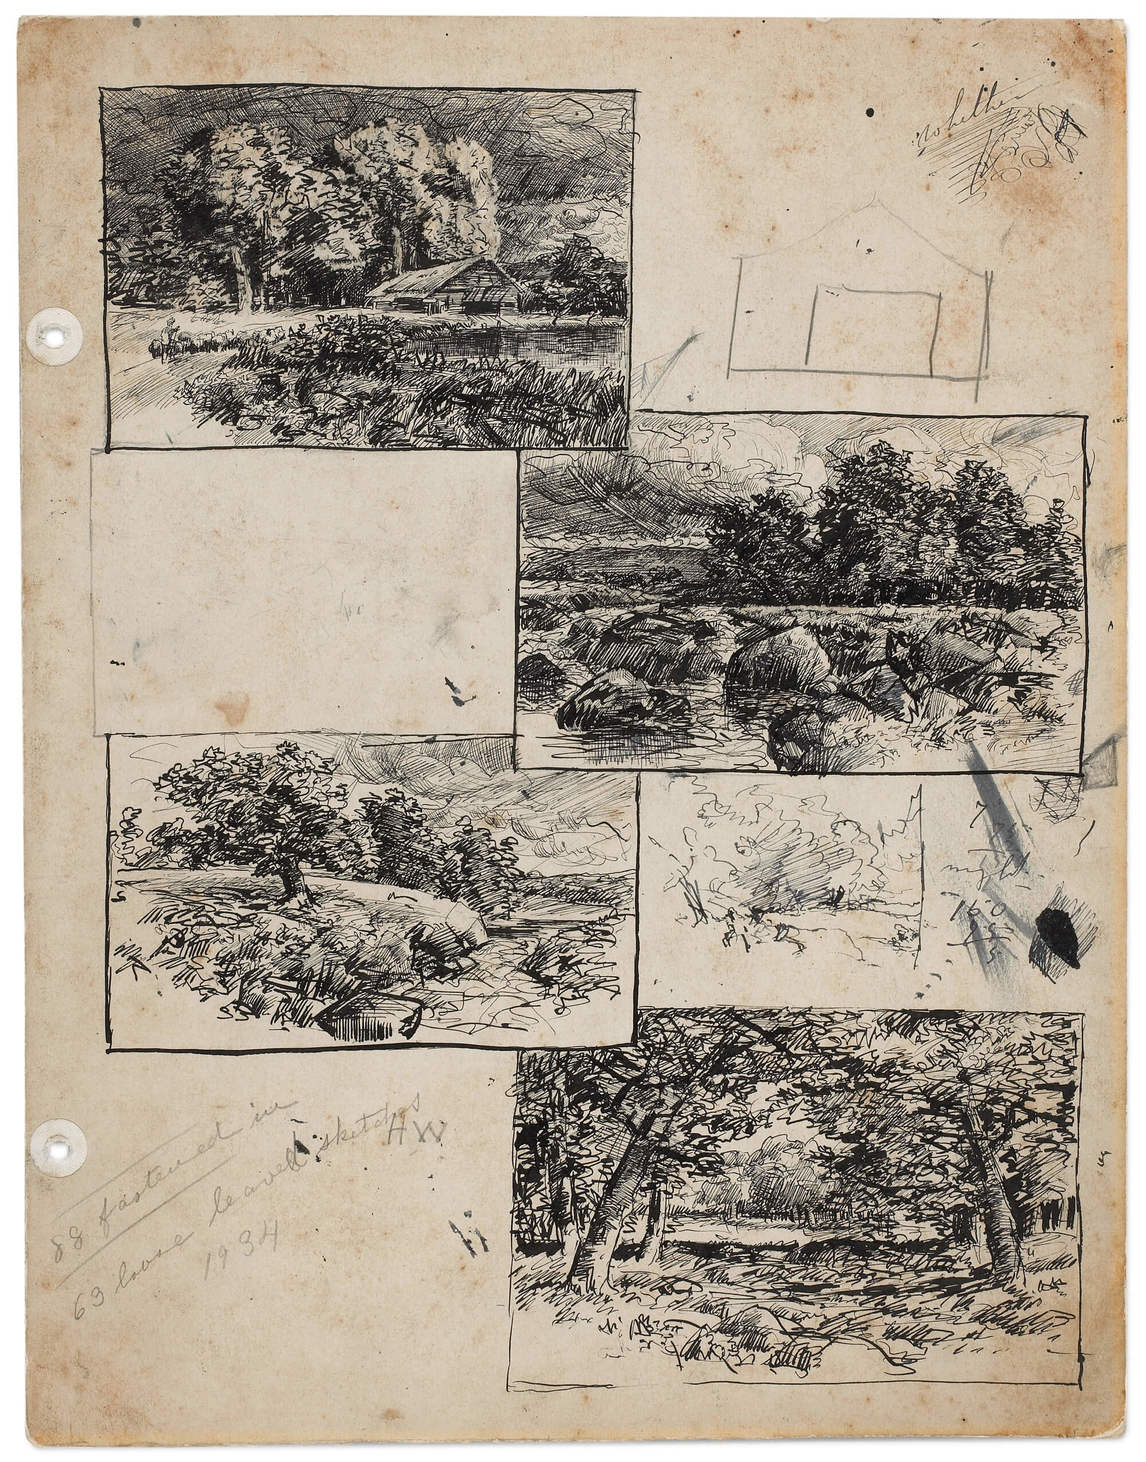 Dessins de paysage et plan préliminaire d’un bâtiment tiré du Carnet de croquis F, début des années 1880, par Homer Watson